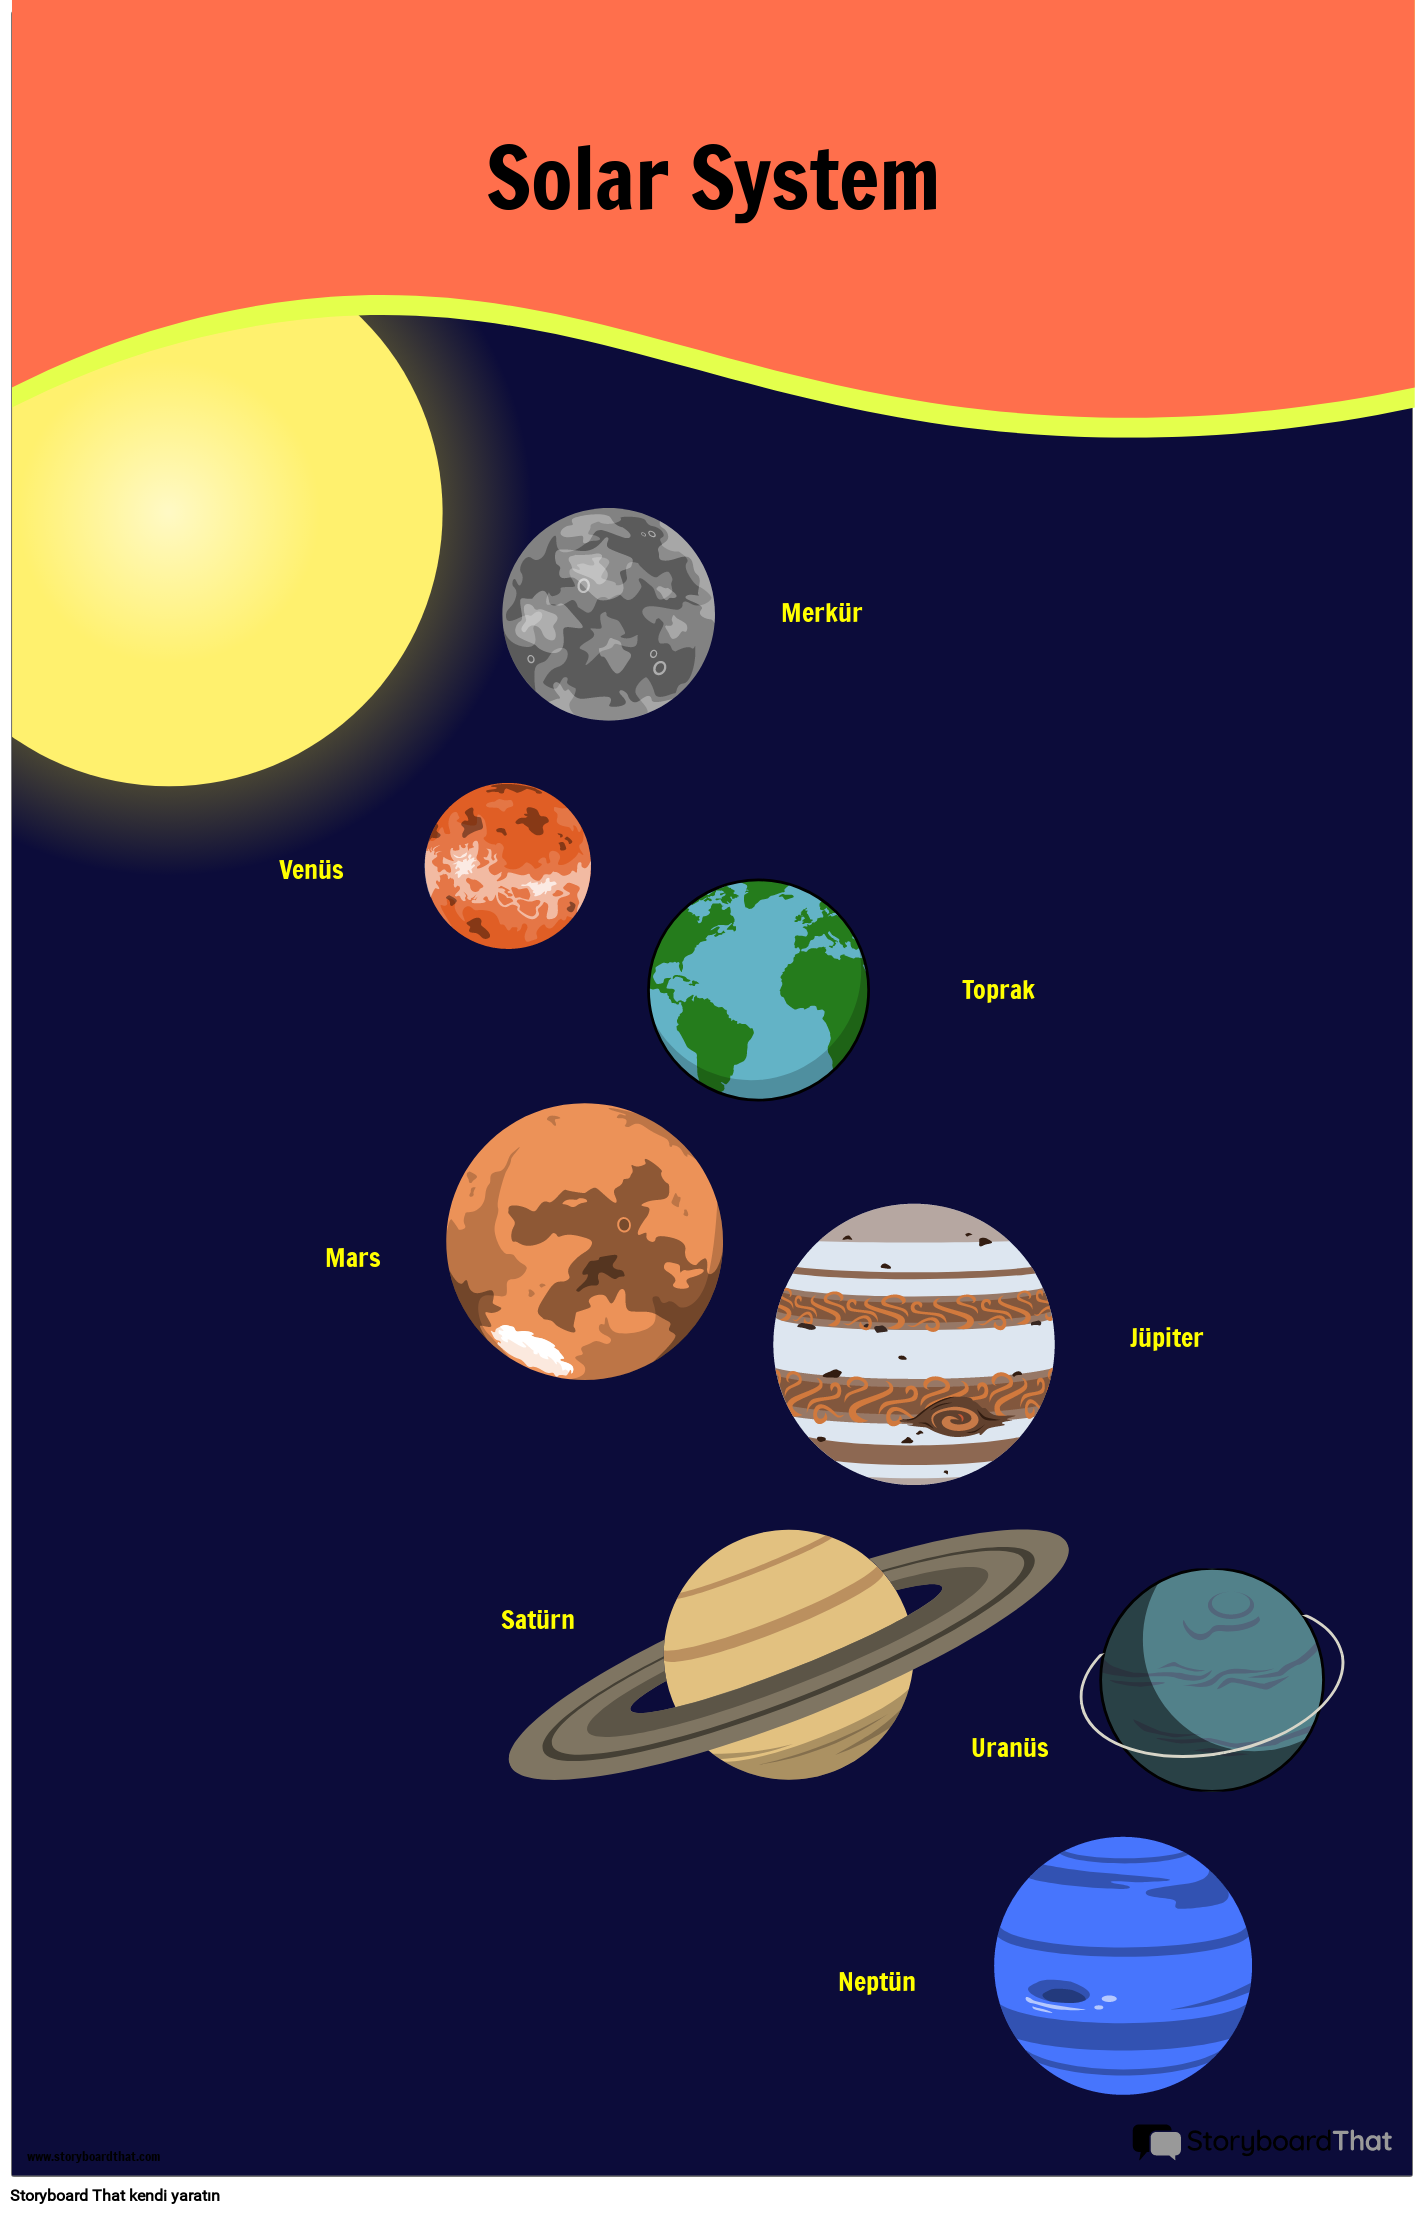 Güneş Sistemi Posteri